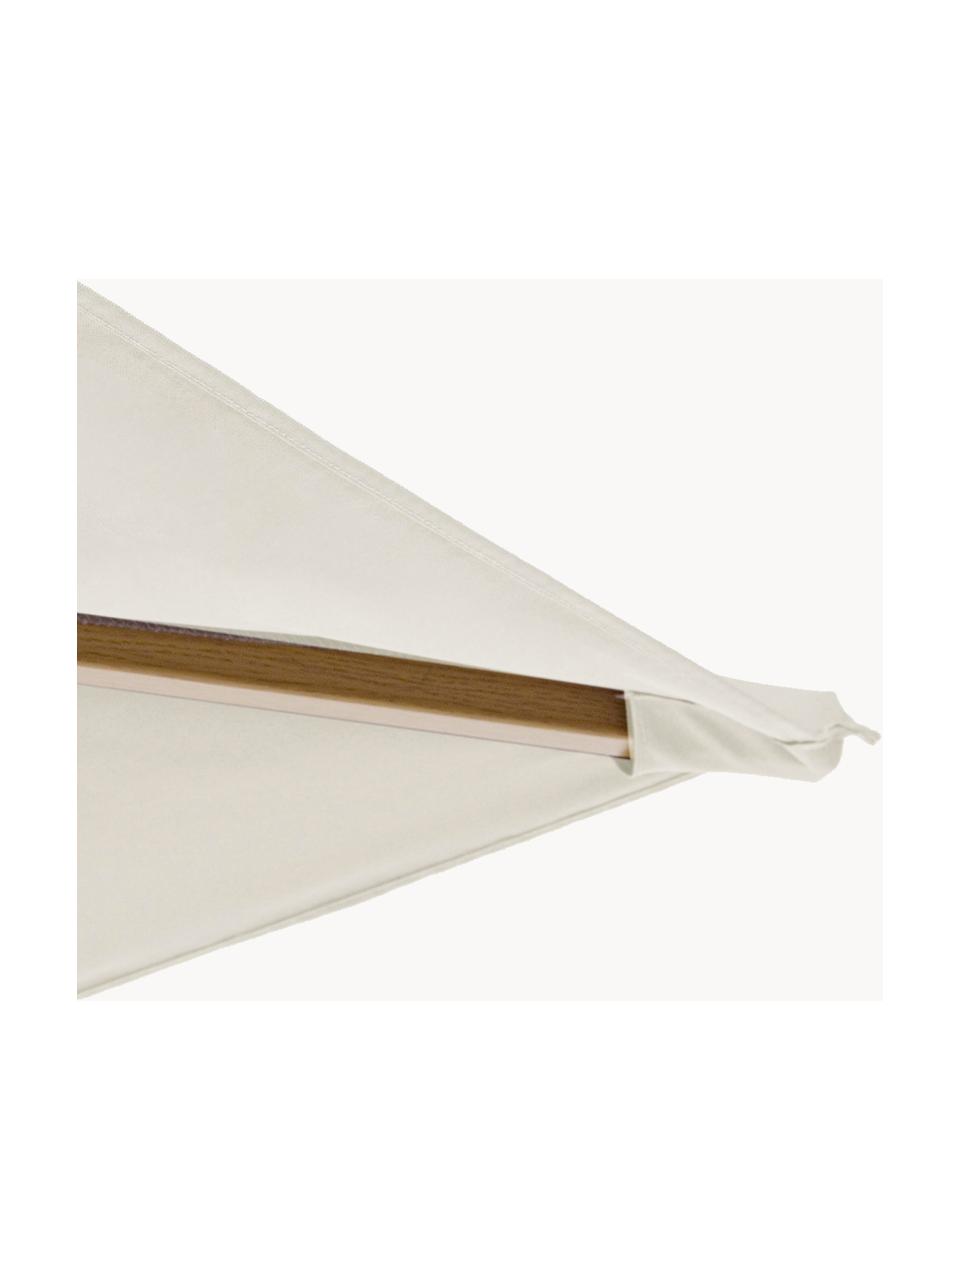 Sombrilla Eclipse, 400 cm, Funda: poliéster con ventilación, Estructura: aluminio con aspecto de m, Blanco crema, aspecto de madera, An 400 x Al 270 cm